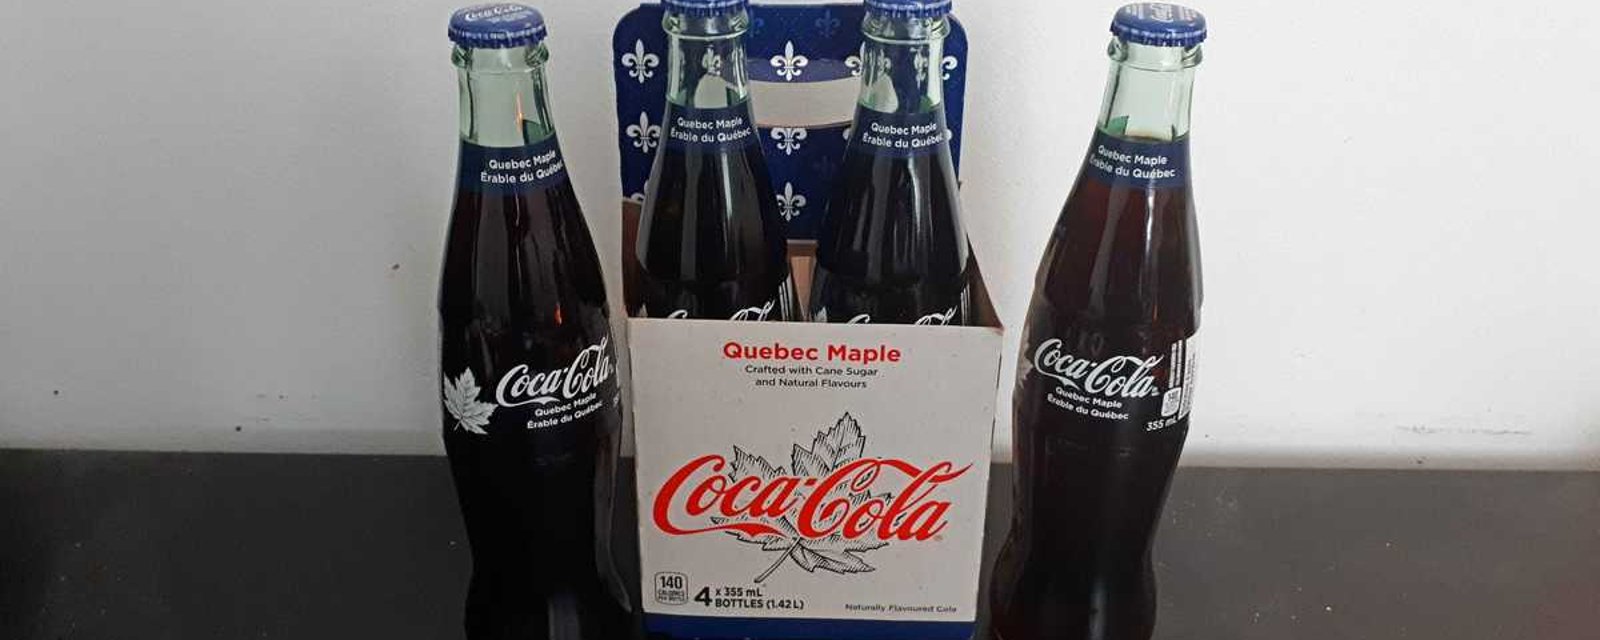 Coca-Cola Canada a lancé une toute nouvelle saveur de boisson gazeuse, la plus québécoise d’entre toutes!